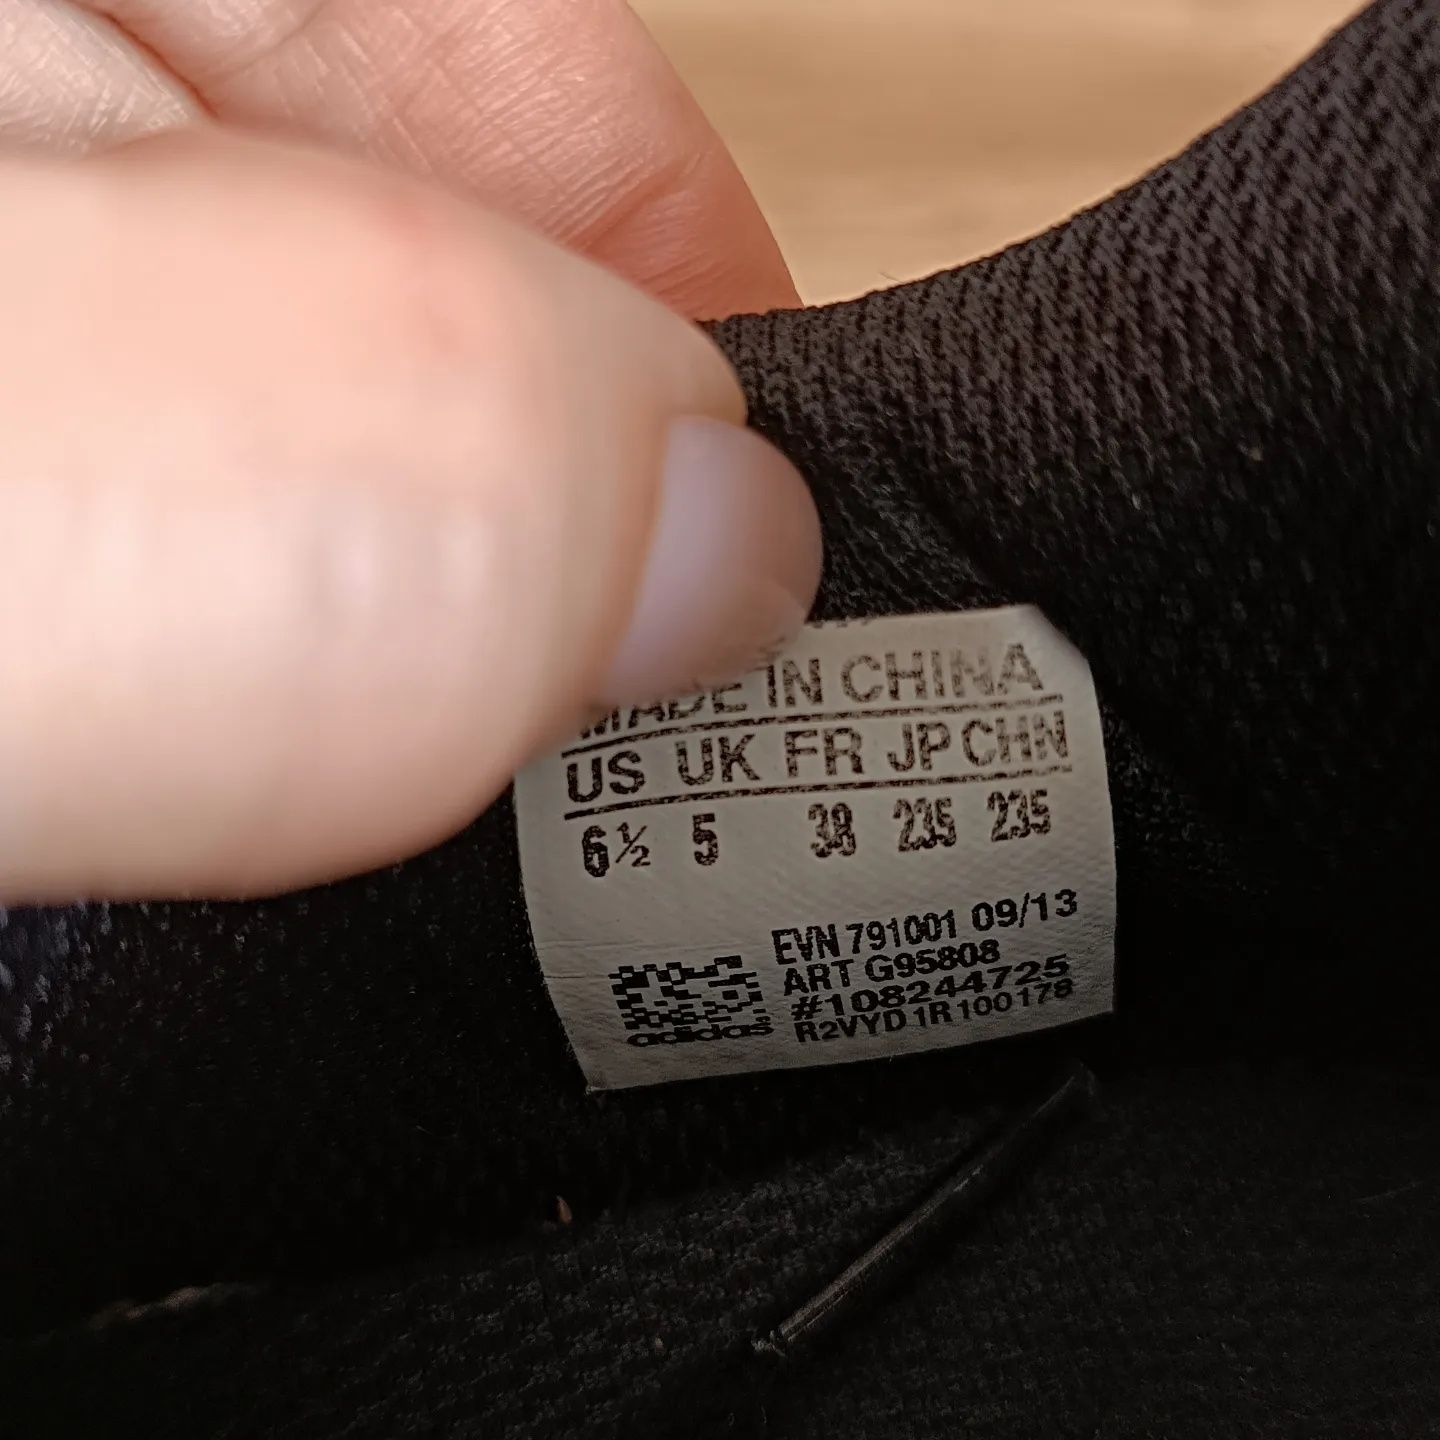 Женские серо-розовые кроссовки Adidas 37-38р, фирменные кросовки сетка